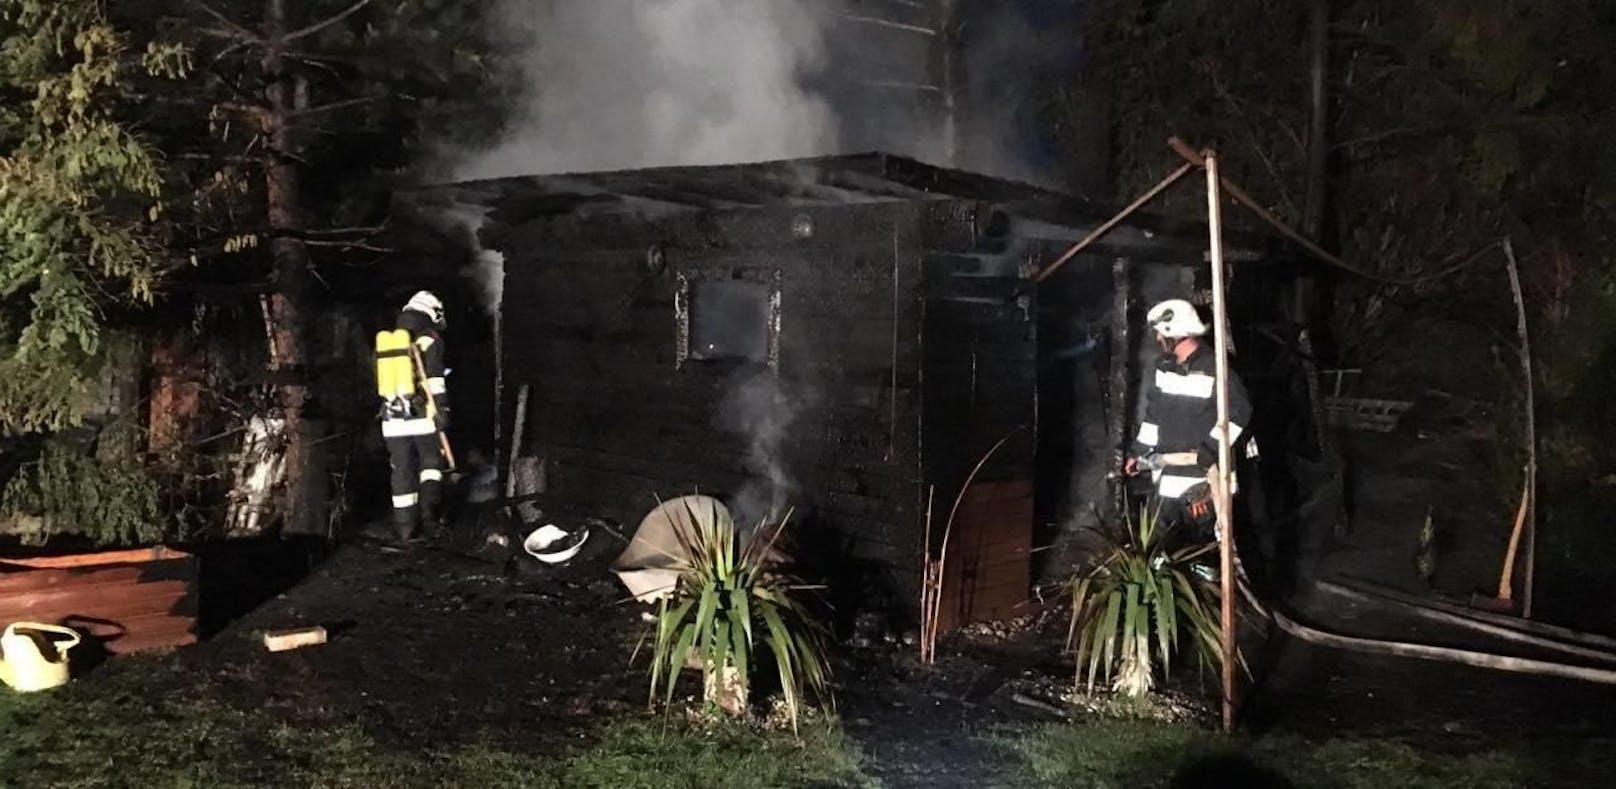 Gartenhütte brannte: Feuerwehrmann verletzt